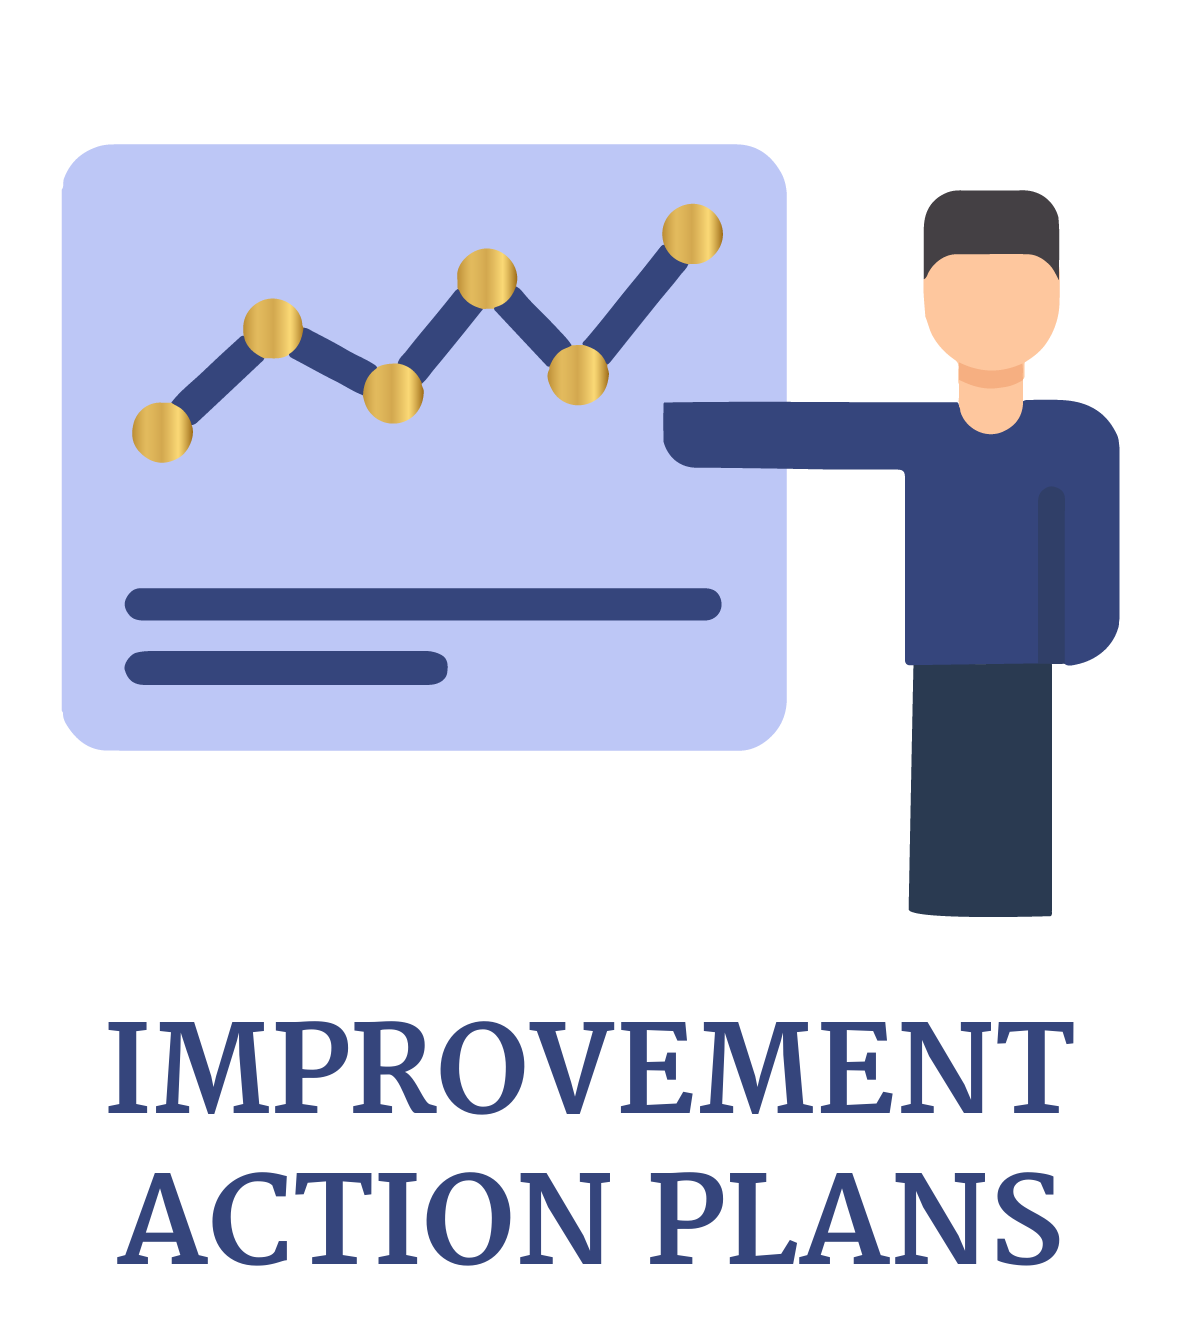 Improvement action plans